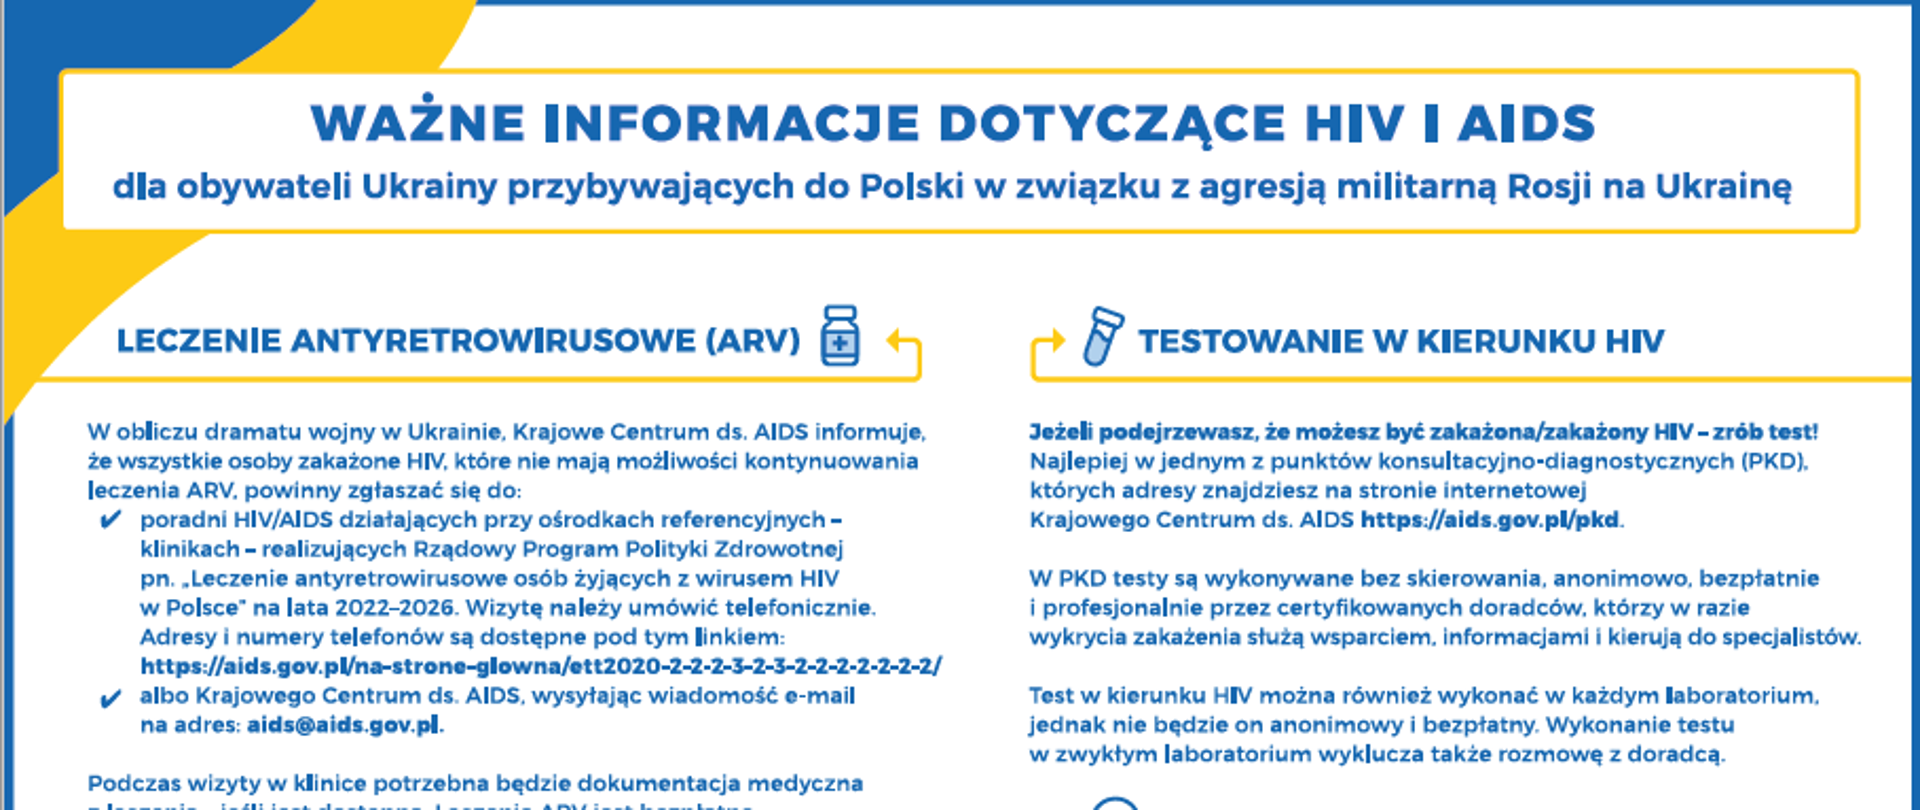 Plakat informacyjny dotyczący opieki zdrowotnej związanej z leczeniem ARV dla uchodźców z Ukrainy